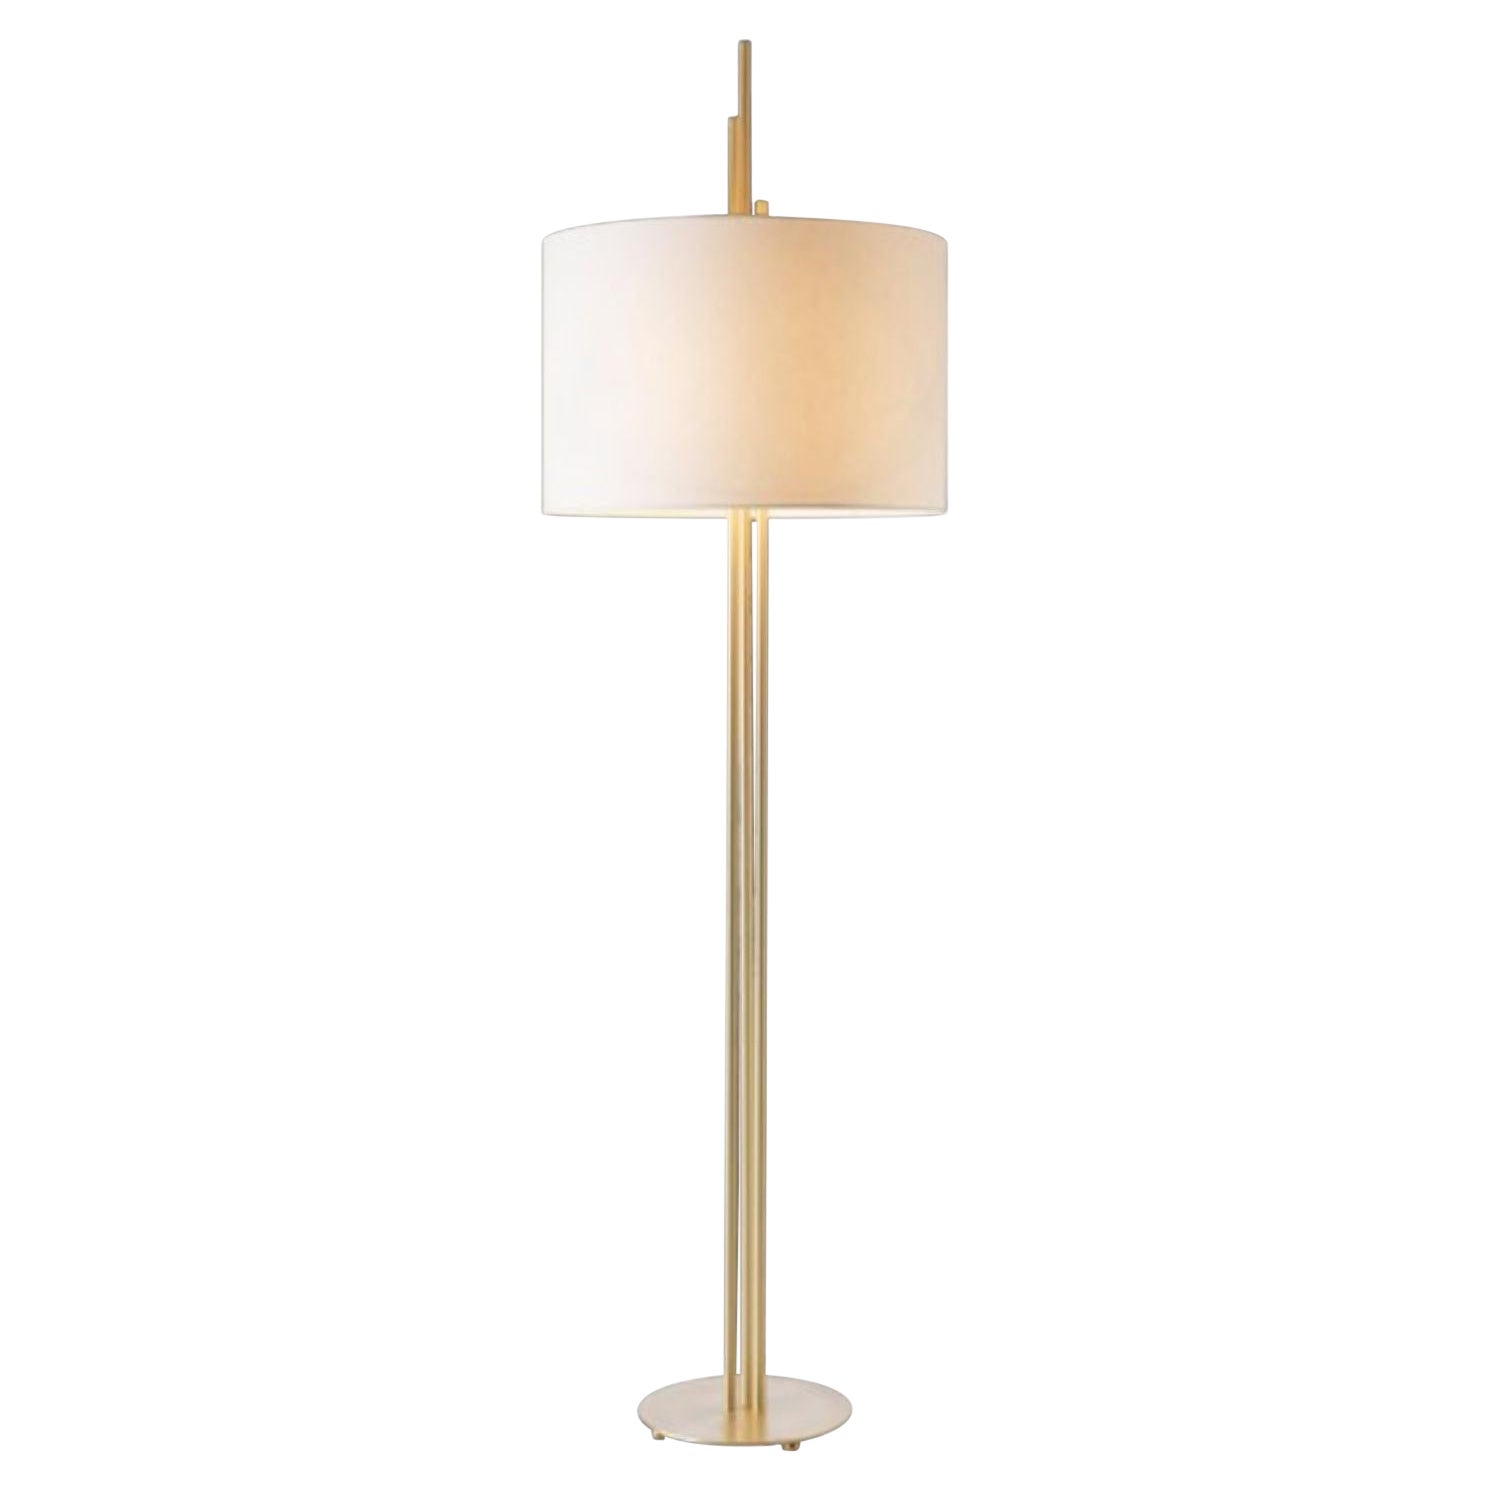 Upper Floor Lamp by Hervé Langlais